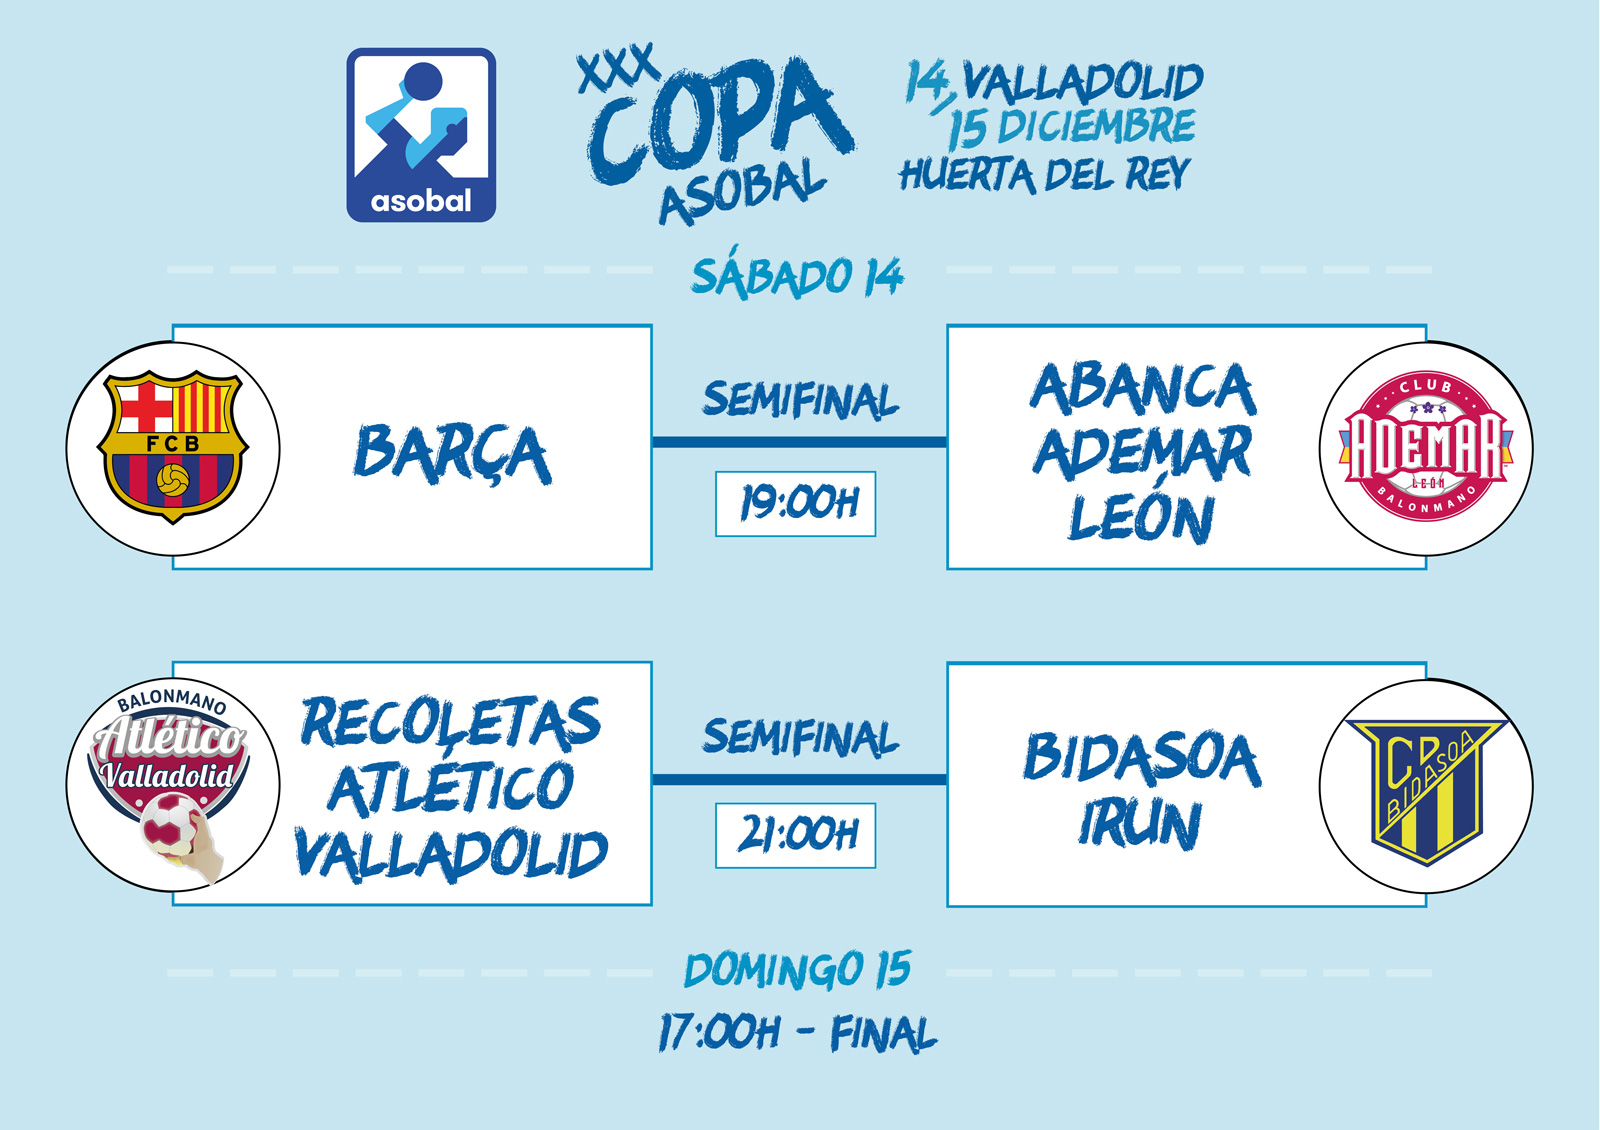 Recoletas At. Valladolid-Bidasoa Irún y Barça-Abanca Ademar León, semifinales de la Copa ASOBAL